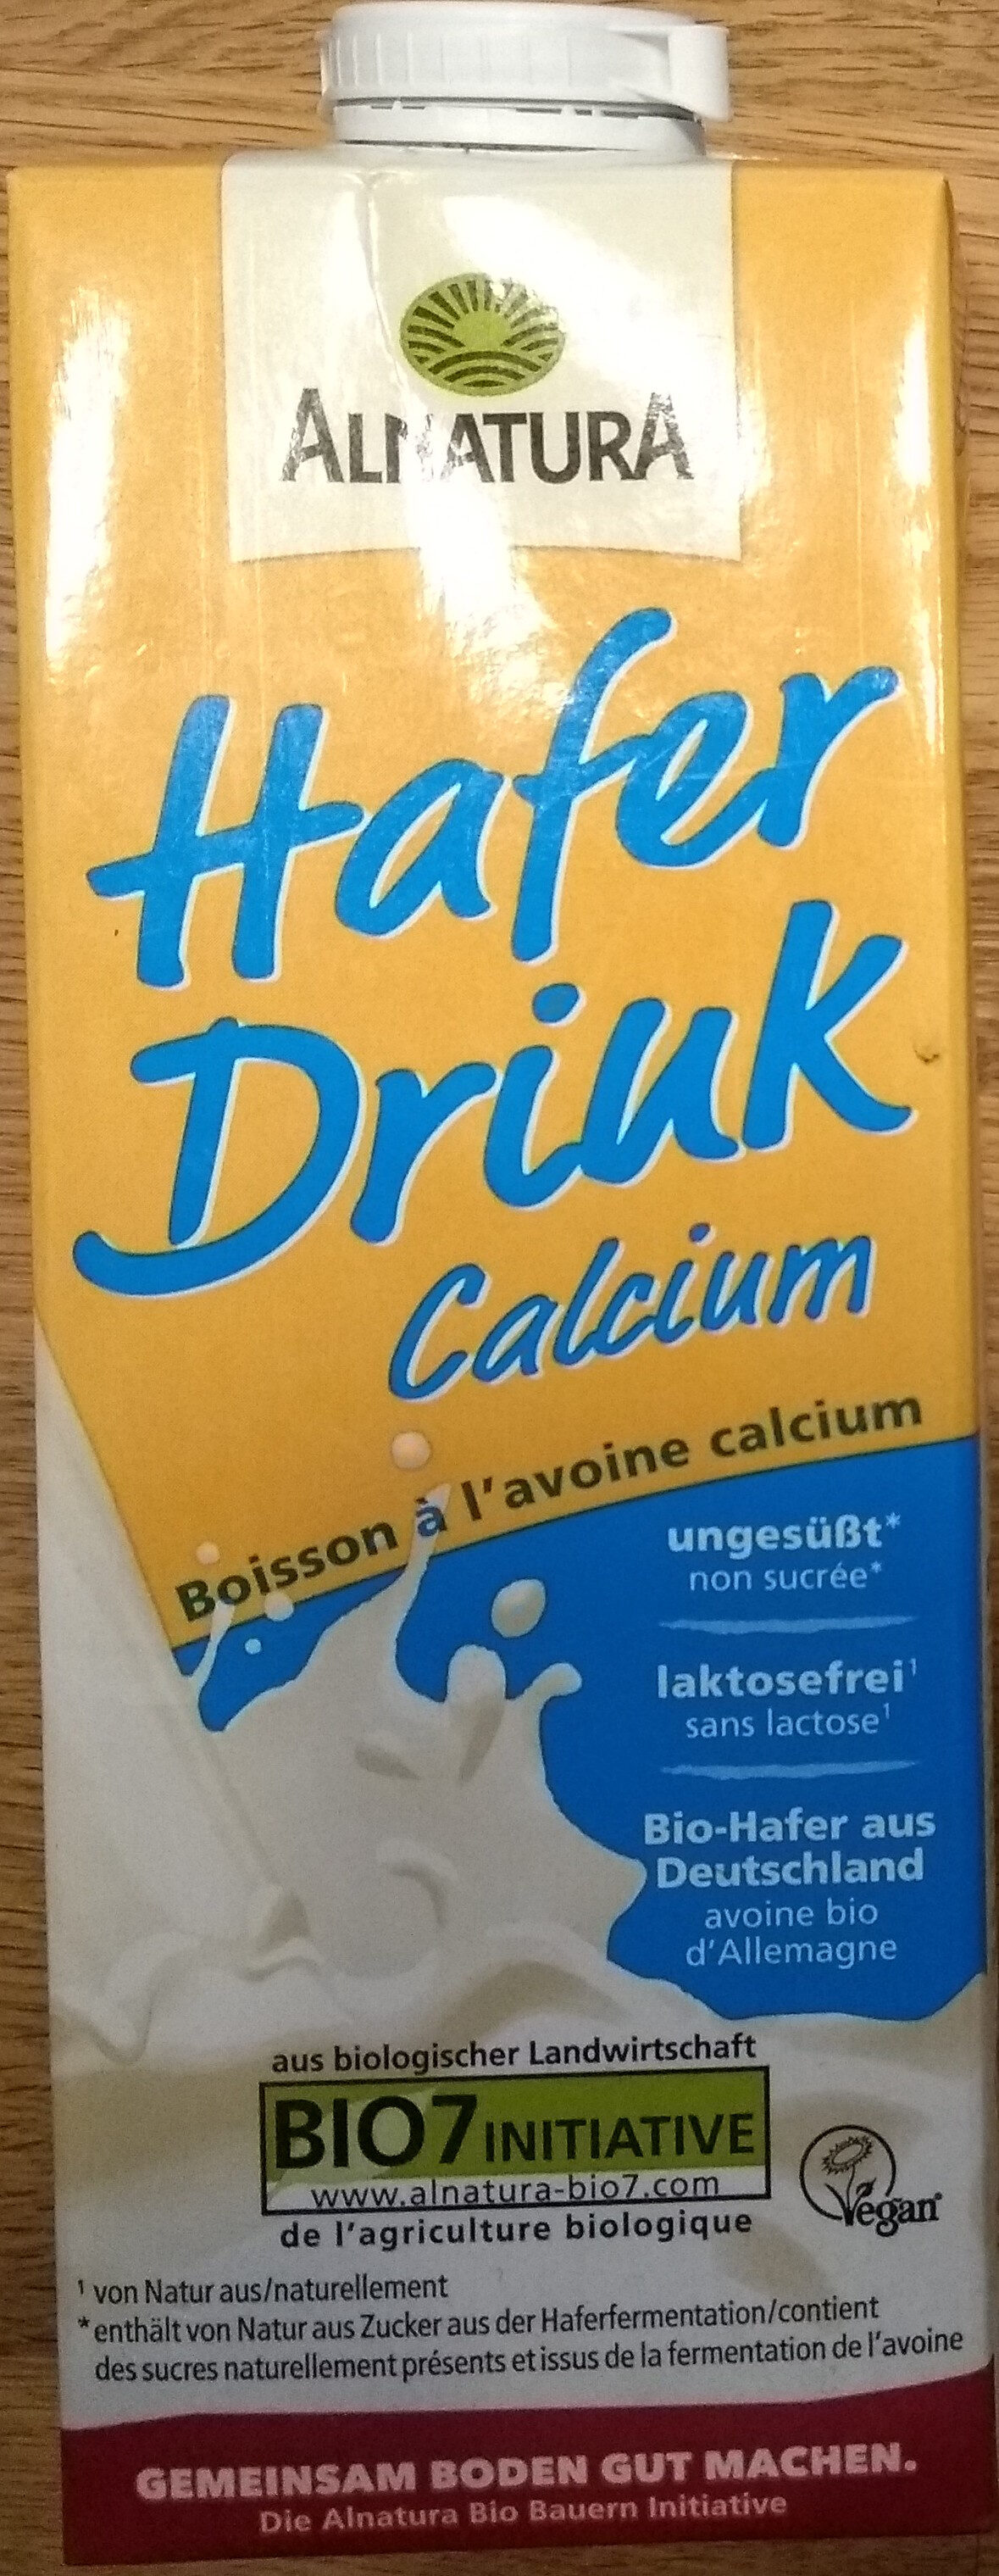 Hafer drink calcium - Produkt